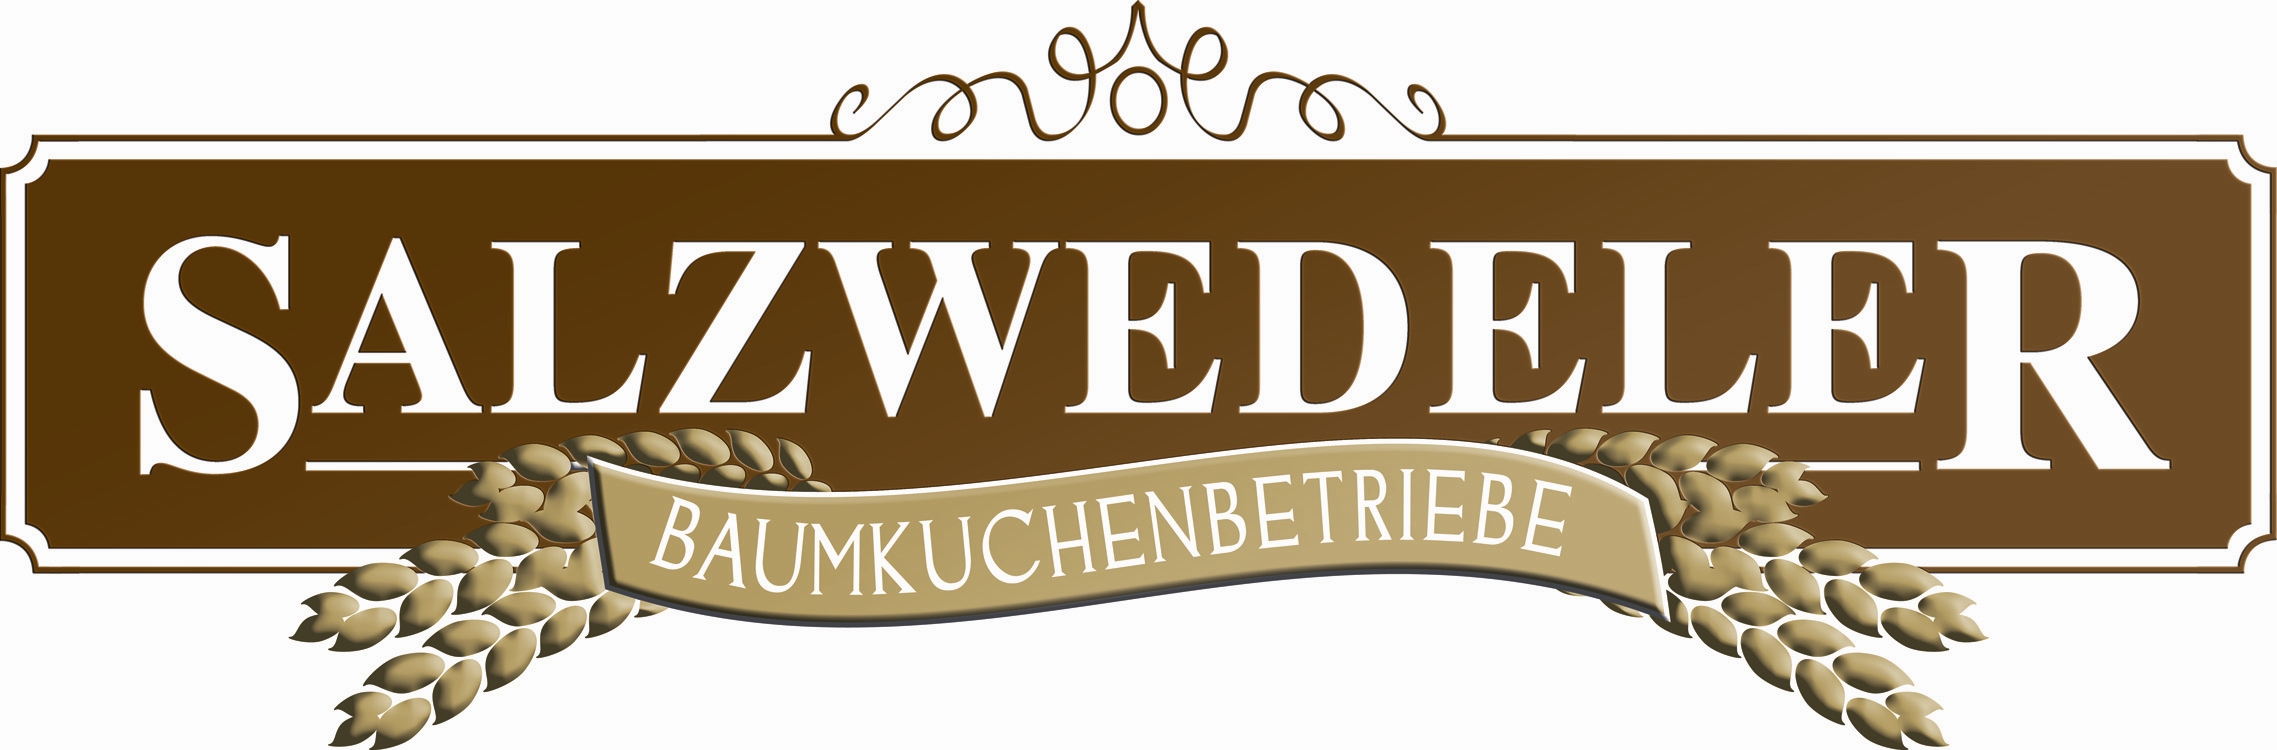 Salzwedeler Baumkuchenbetriebe Bosse GmbH